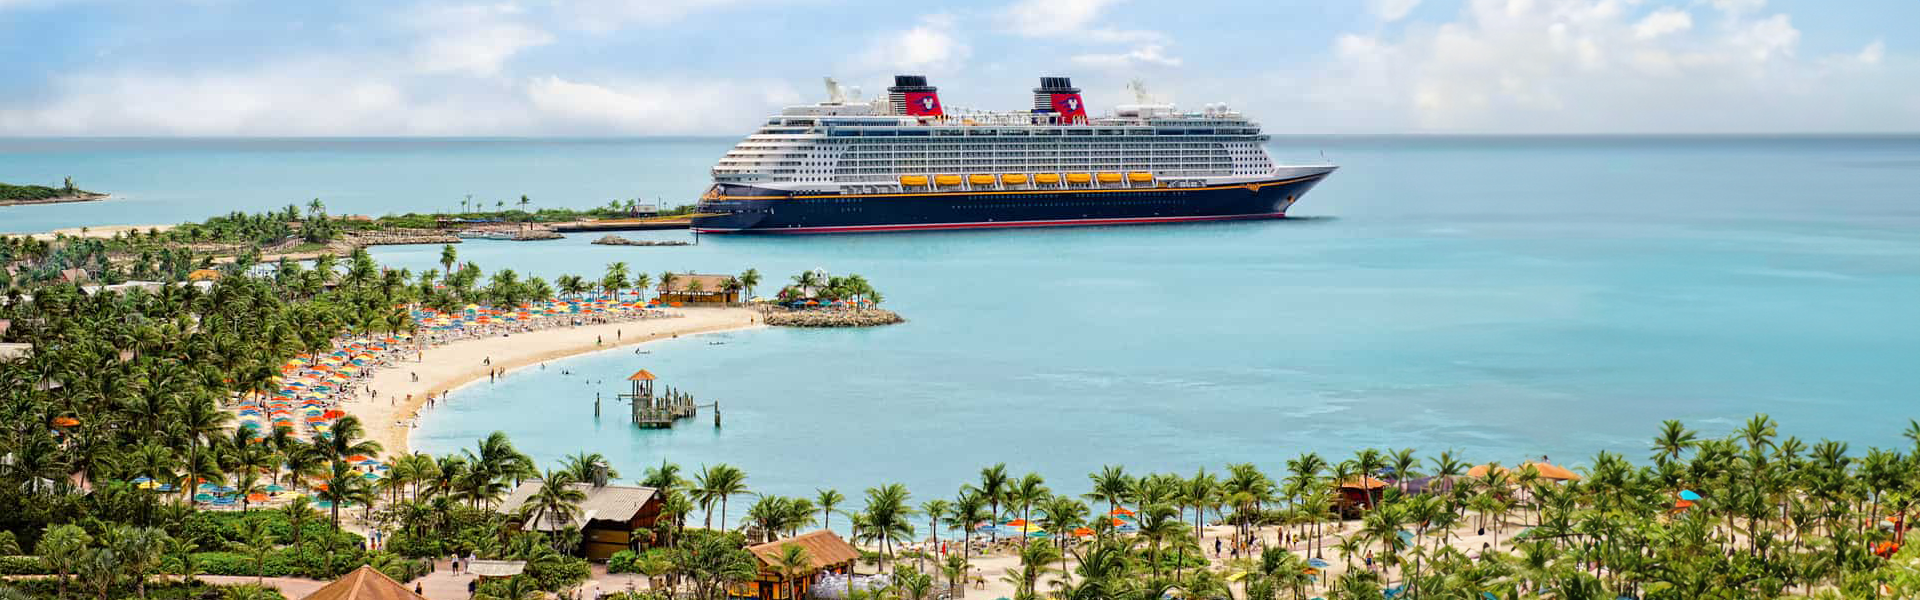 Explorez les Caraïbes magiques dans le confort d'un navire Disney. Découvrez nos offres !